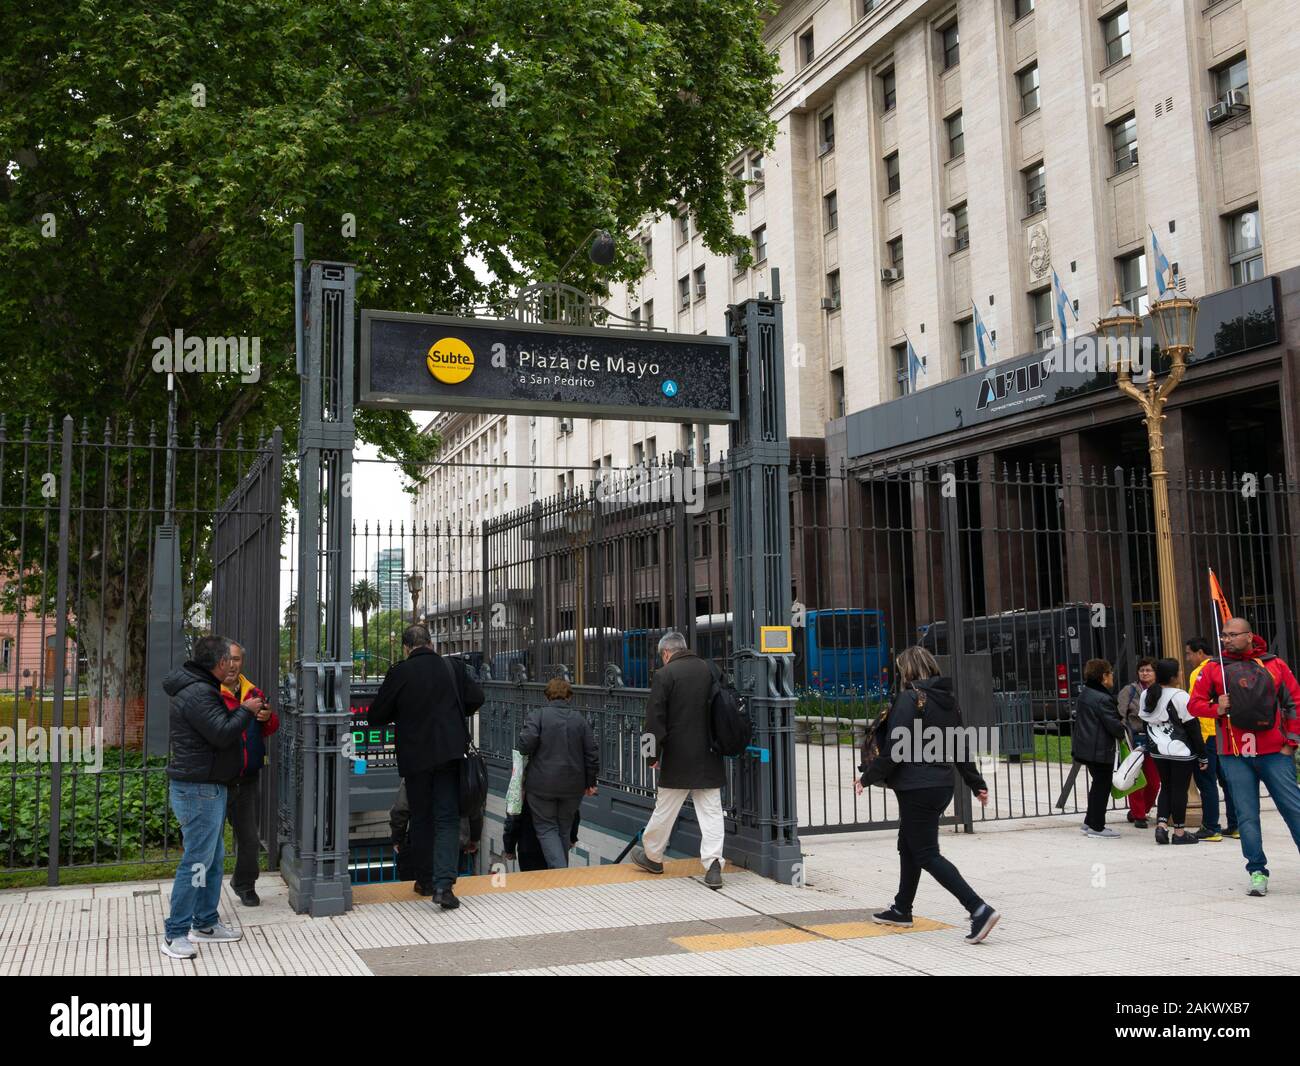 La estación de metro de la Plaza de Mayo, Buenos Aires, Argentina. Foto de stock